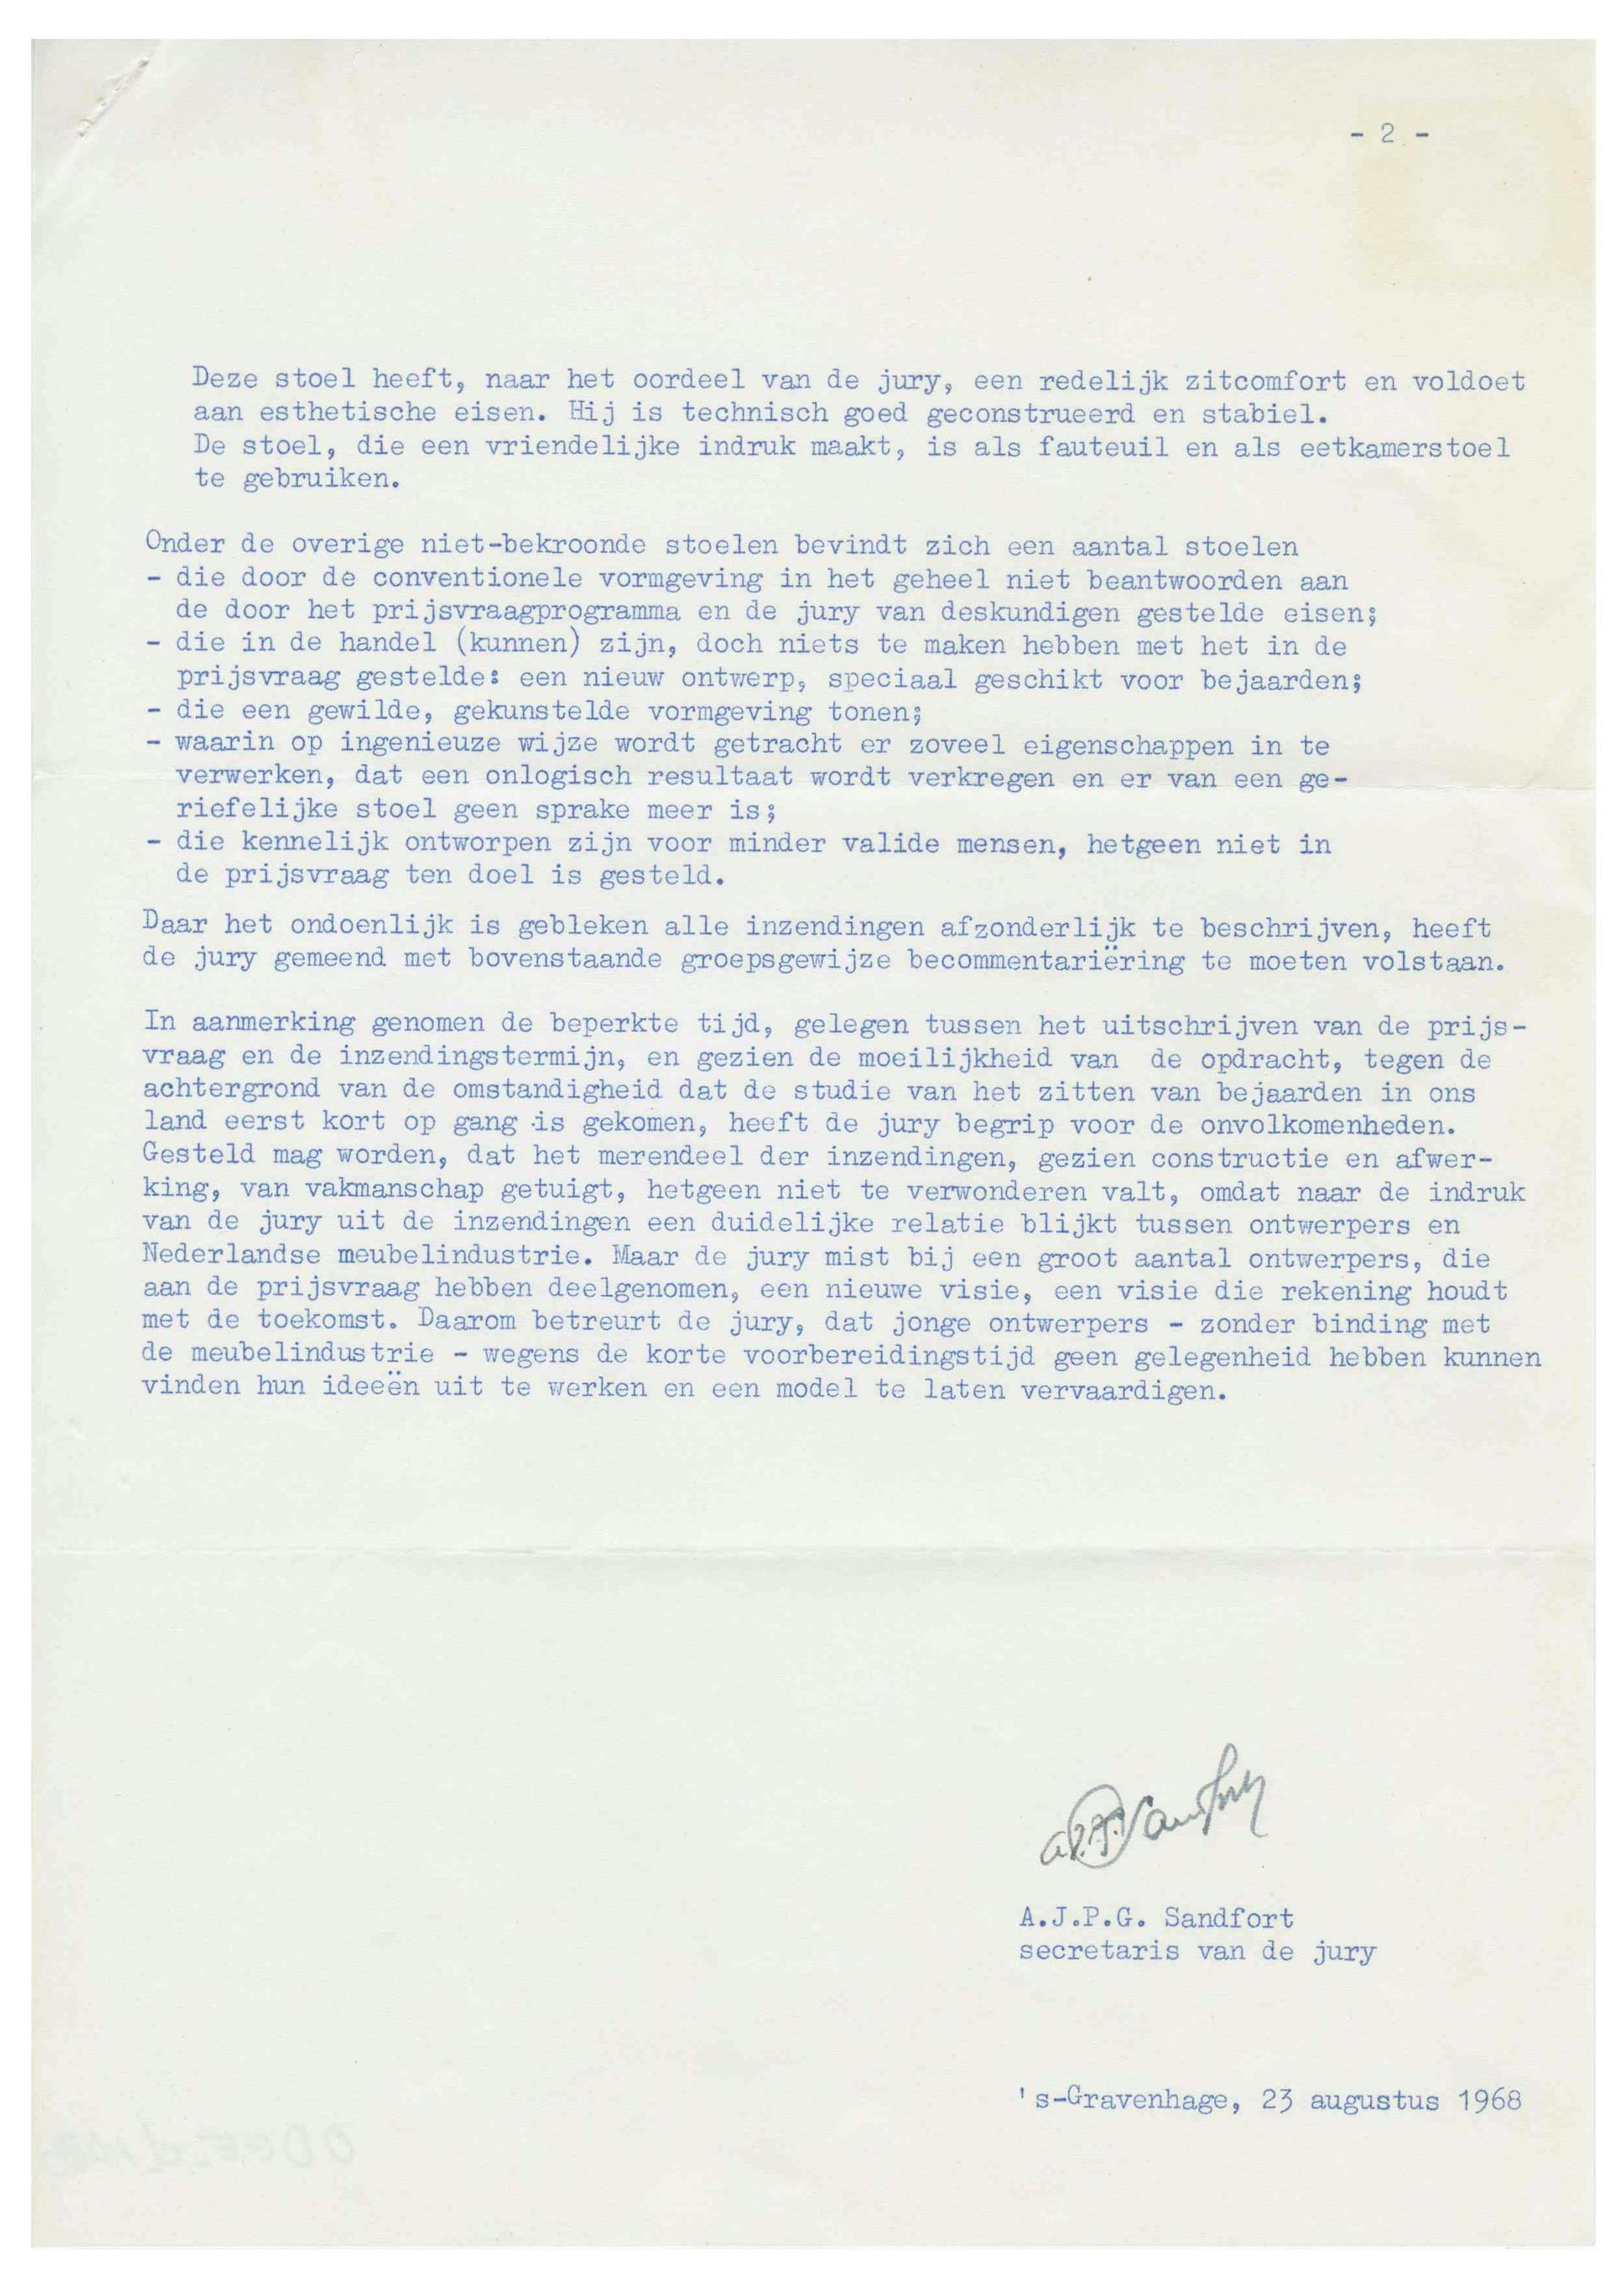  Juryrapport met betrekking tot de Nationale Prijsvraag Bejaardenstoel, 1968. Opdrachtgever: Centrale Bond van Meubelfabrikanten. Collectie Het Nieuwe Instituut, ODEE d1880-2